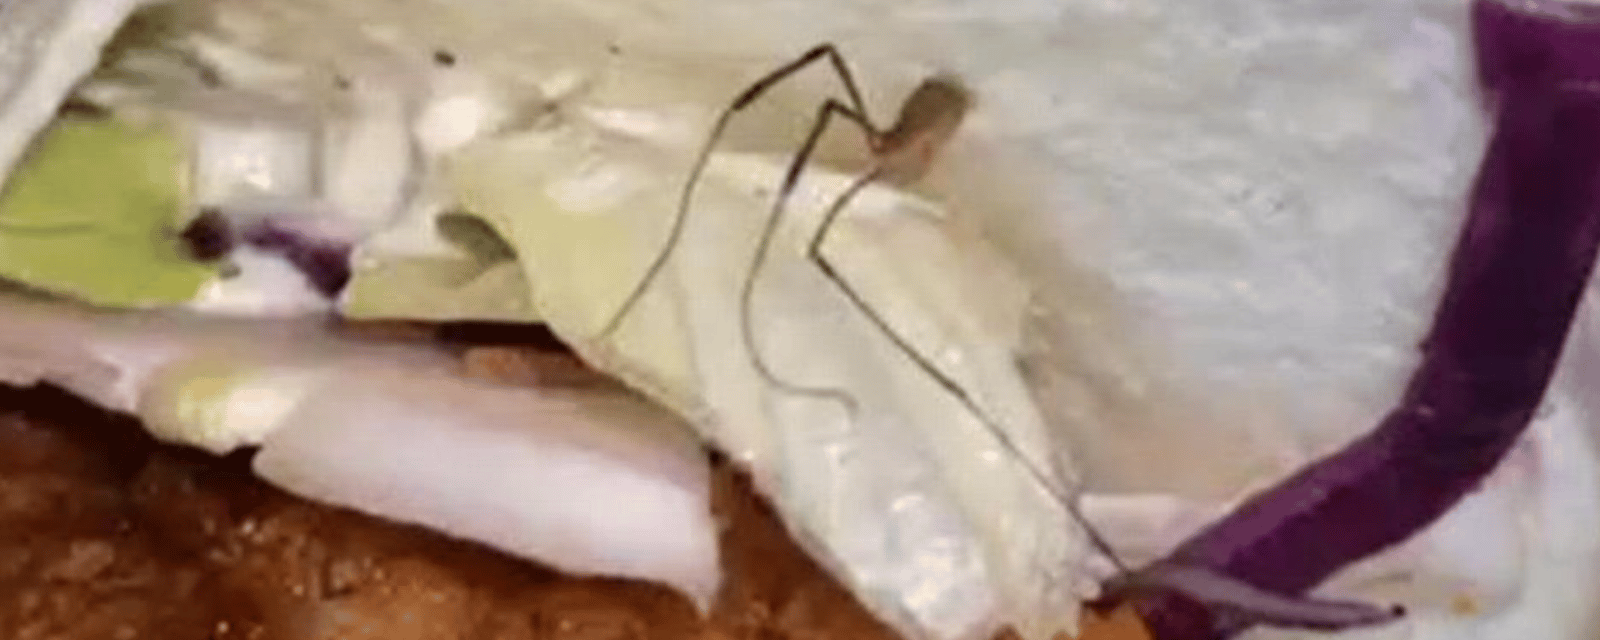 Un client de PFK furieux après avoir découvert une araignée dans son sandwich